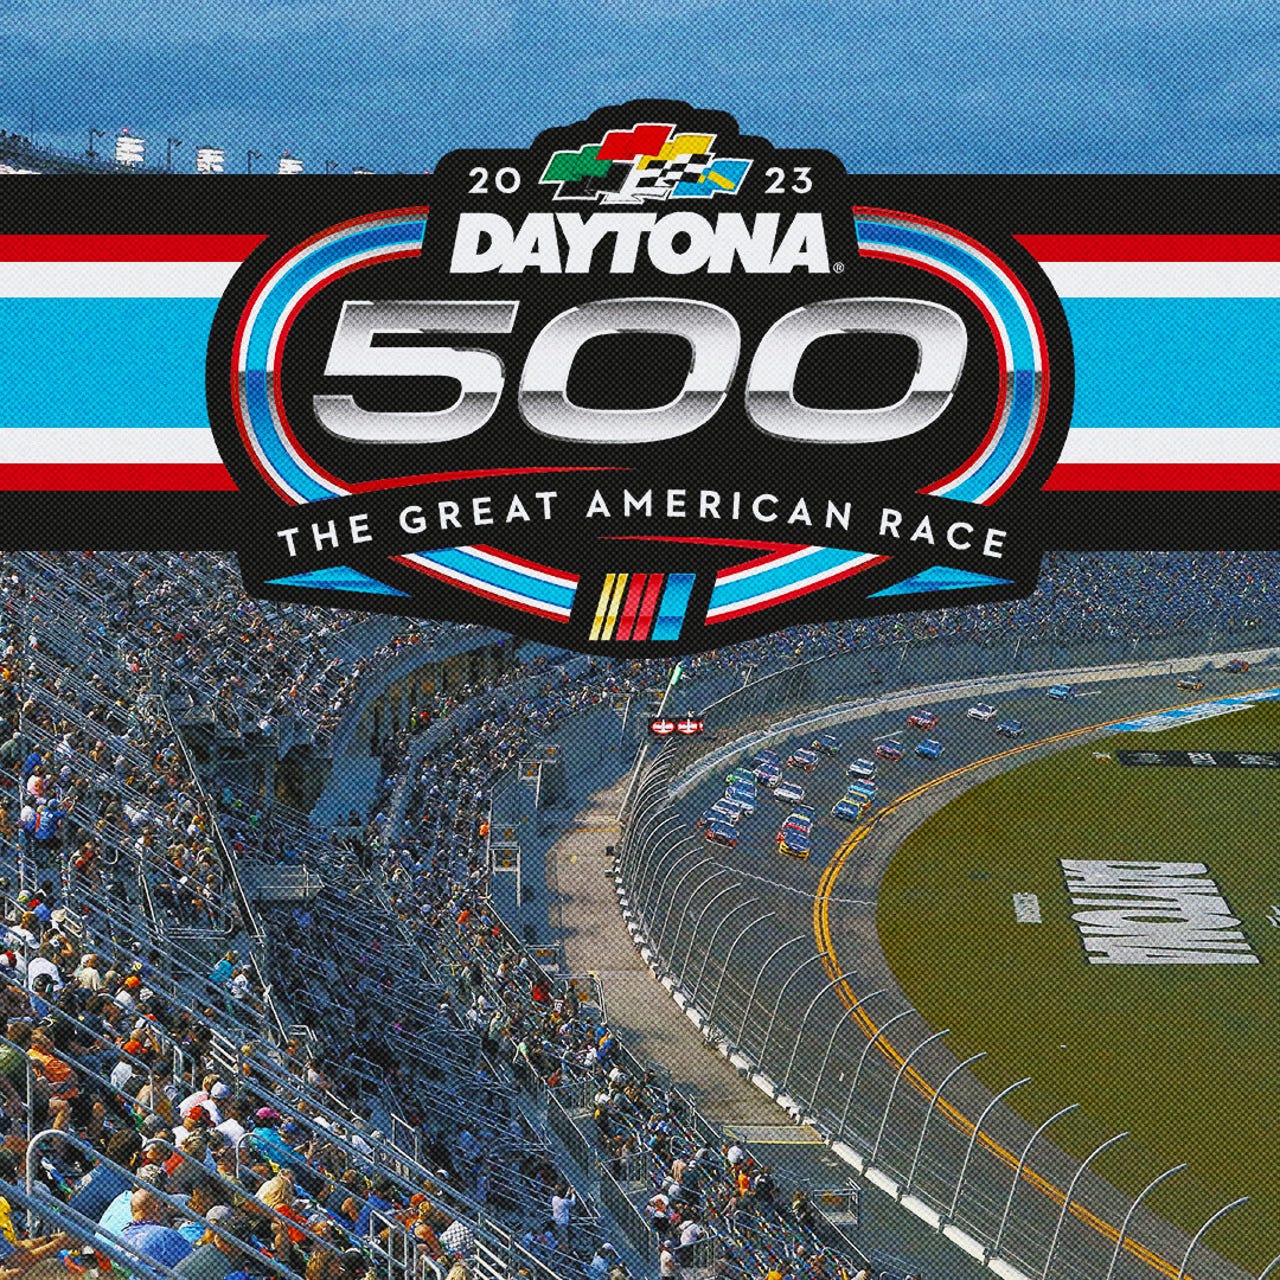 Daytona 500 highlights Ricky Stenhouse Jr